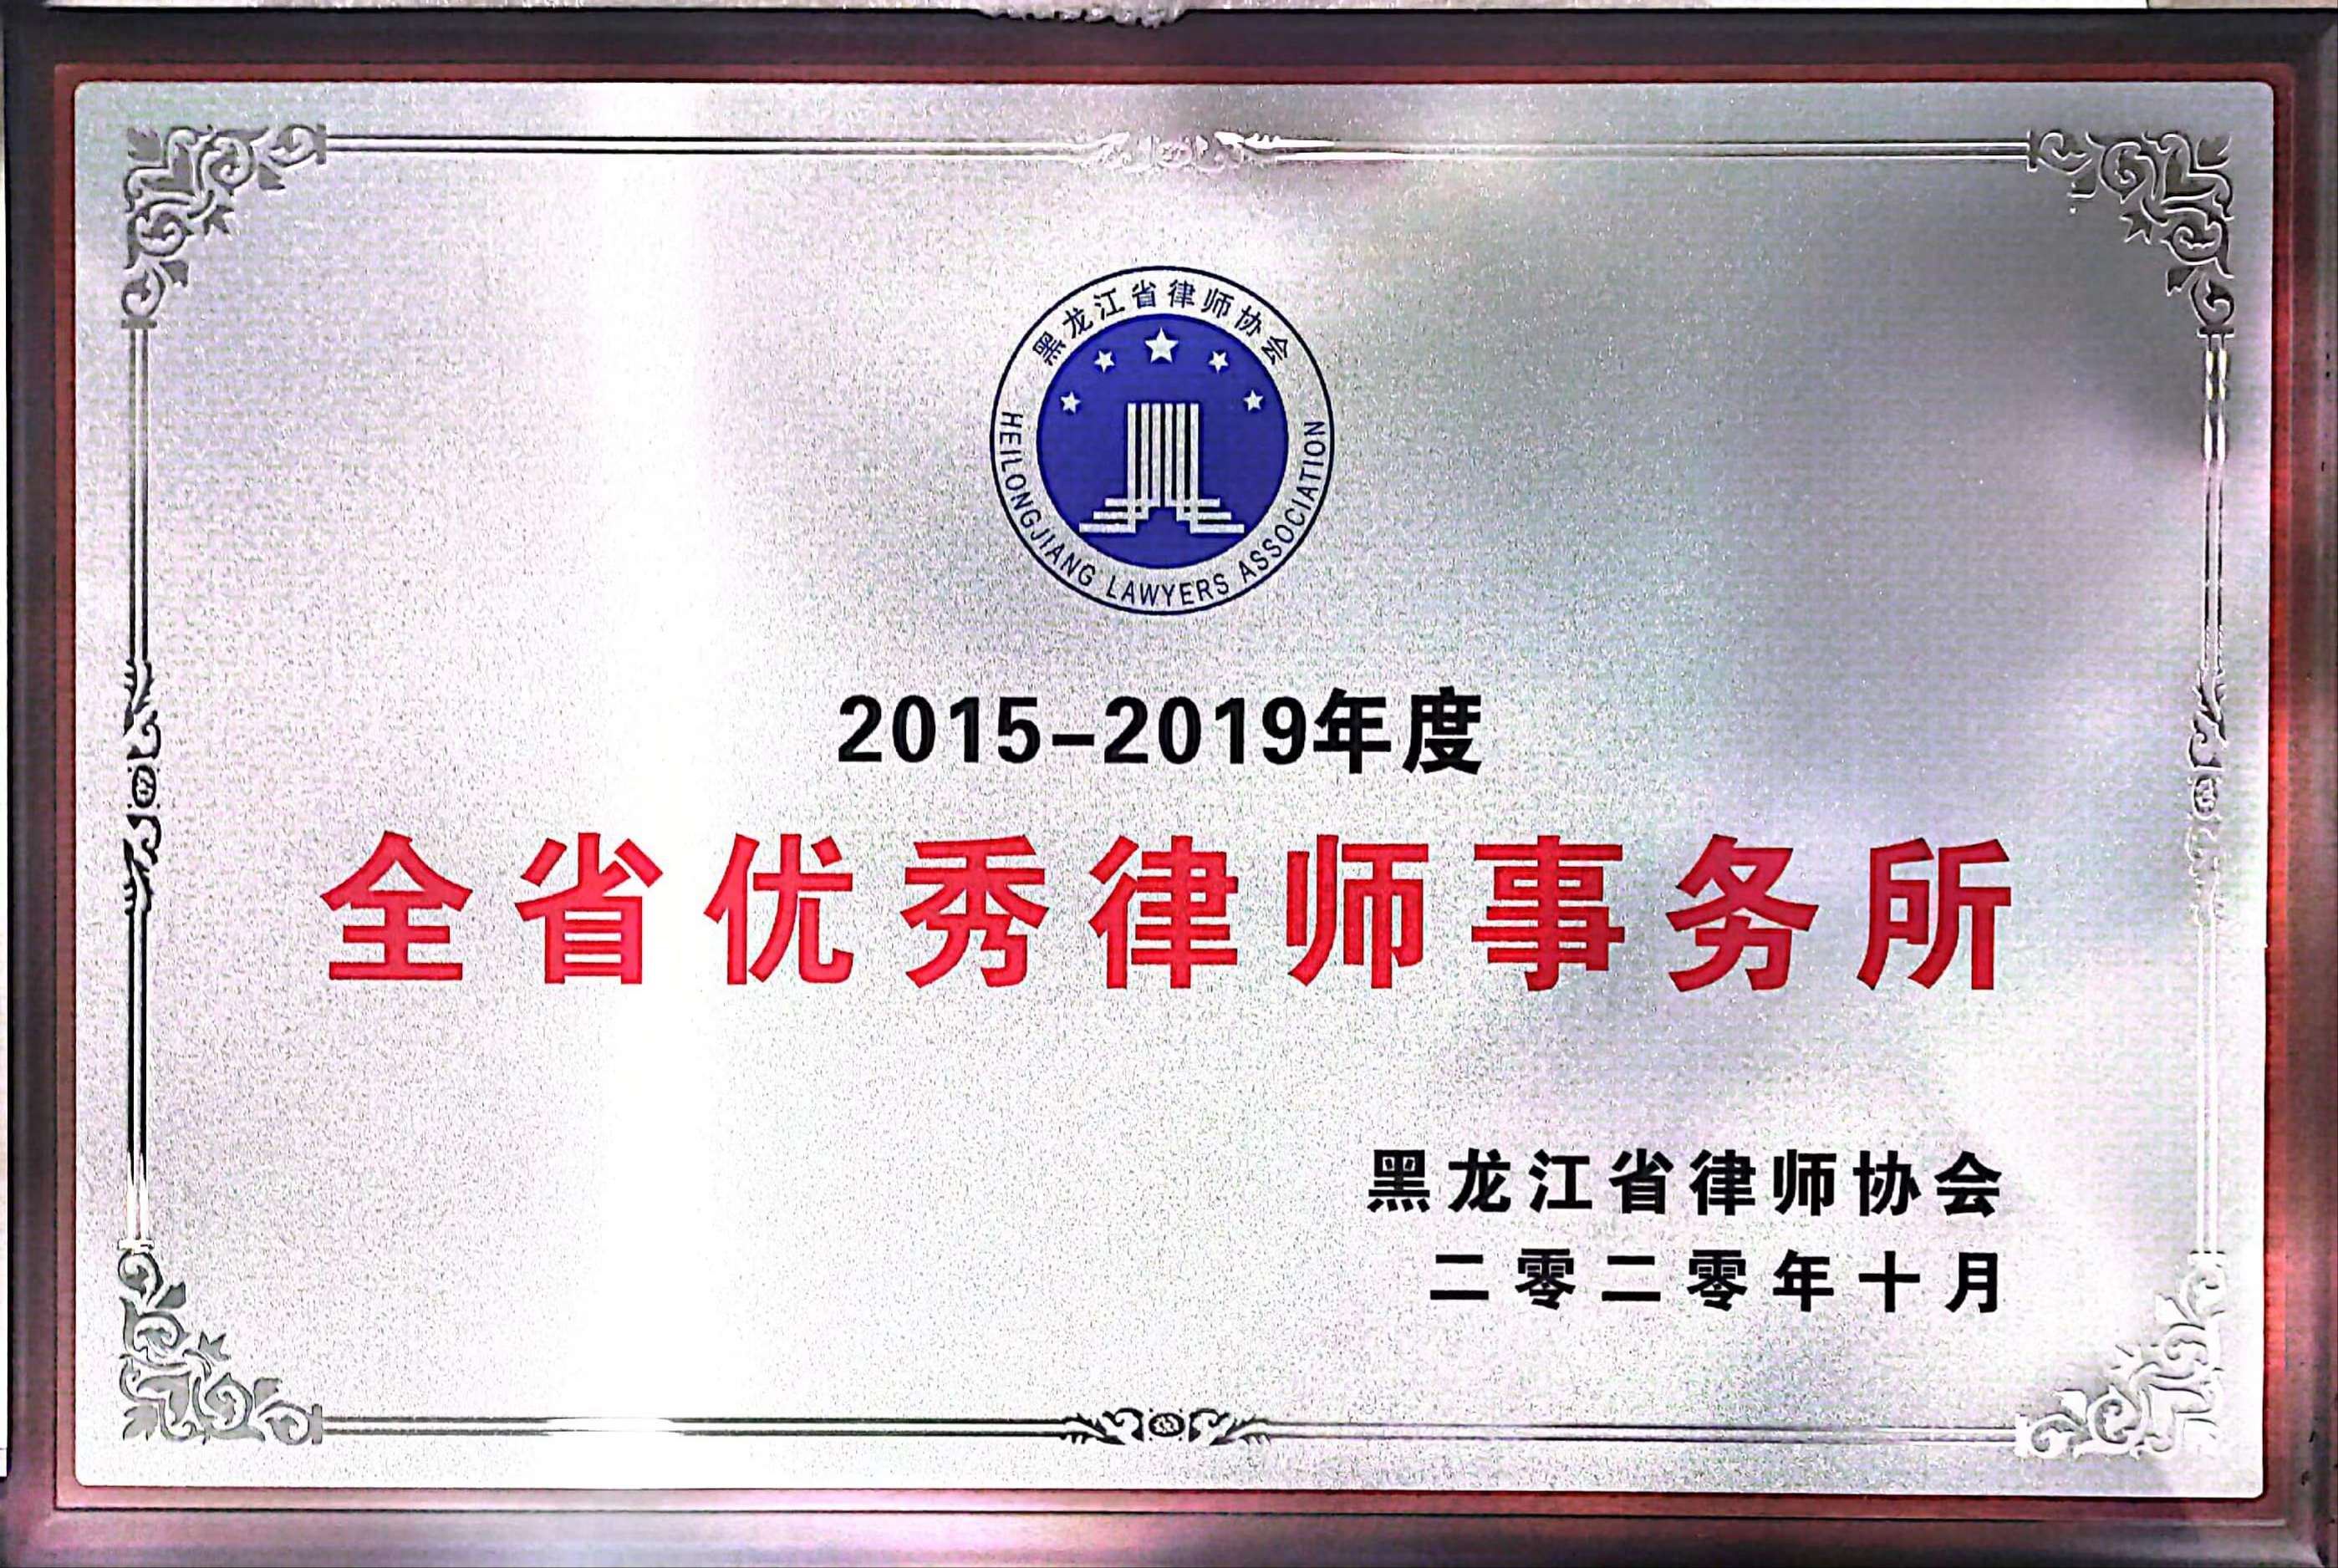 2015-2019年度全省优秀律师事务所